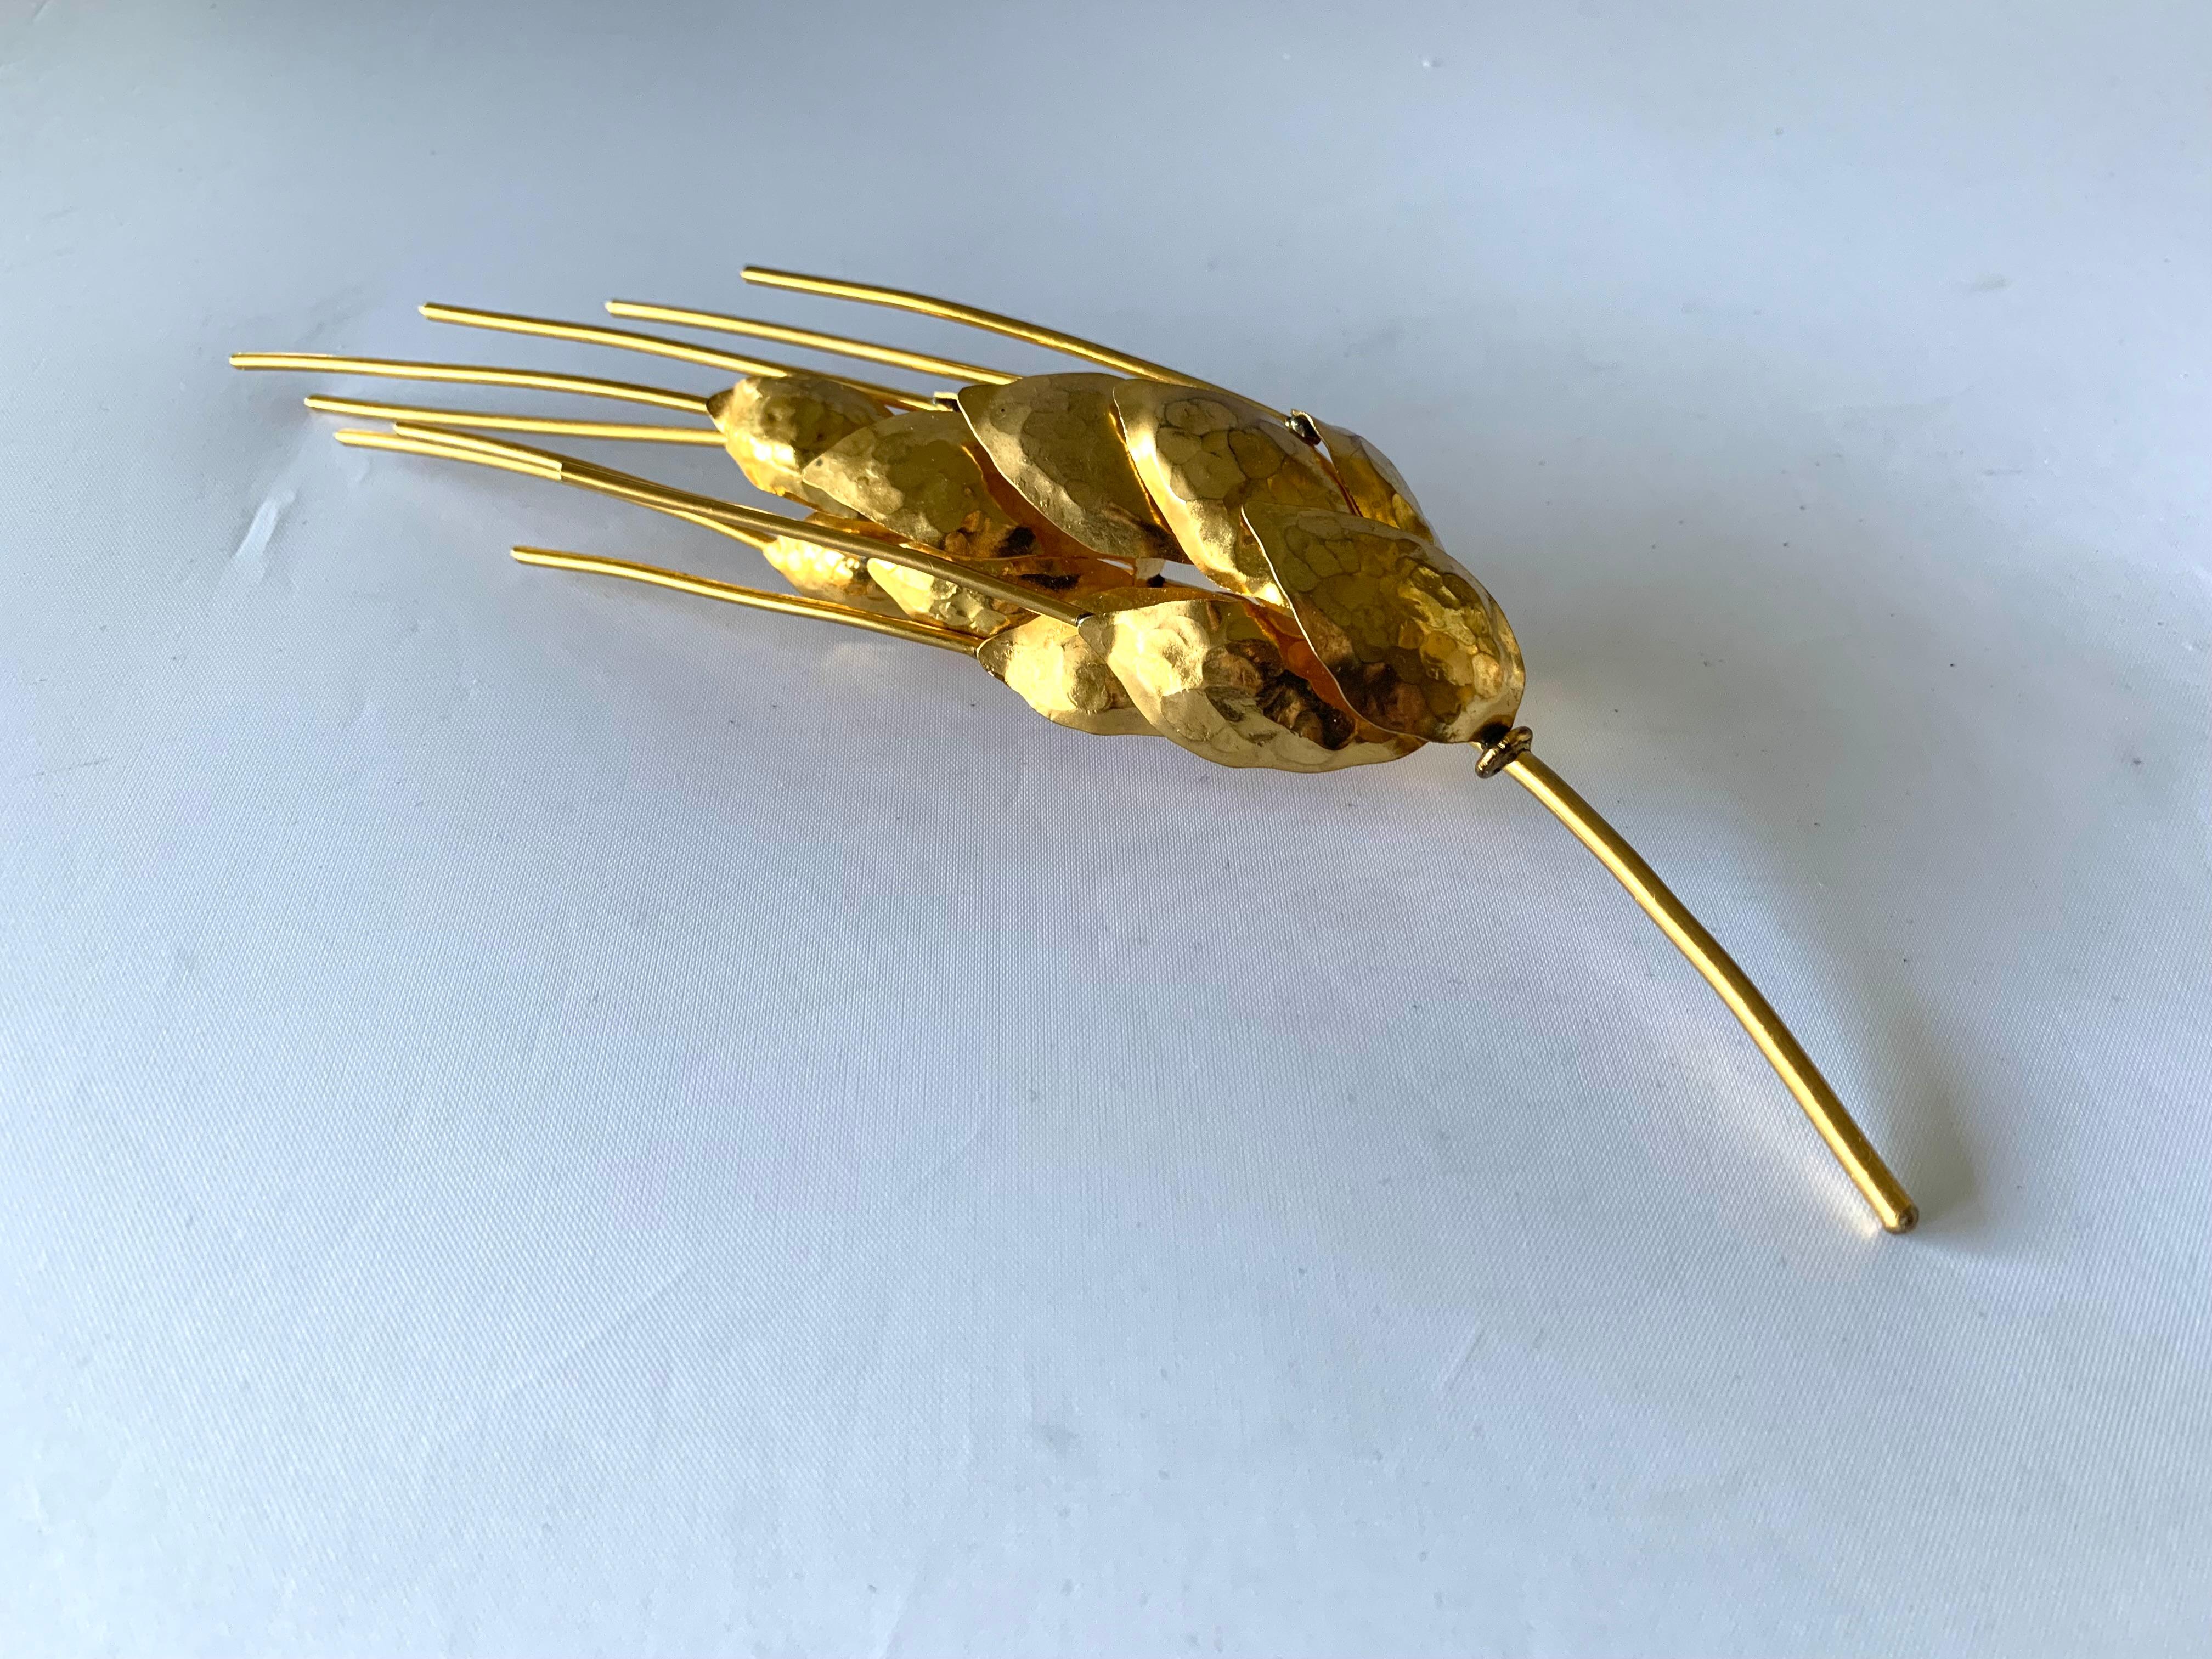 Vintage Herve Van der Straeten wheat brooch - hammered gold-plated brass in a three-dimensional design. Signed Herve Van der Straeten.

